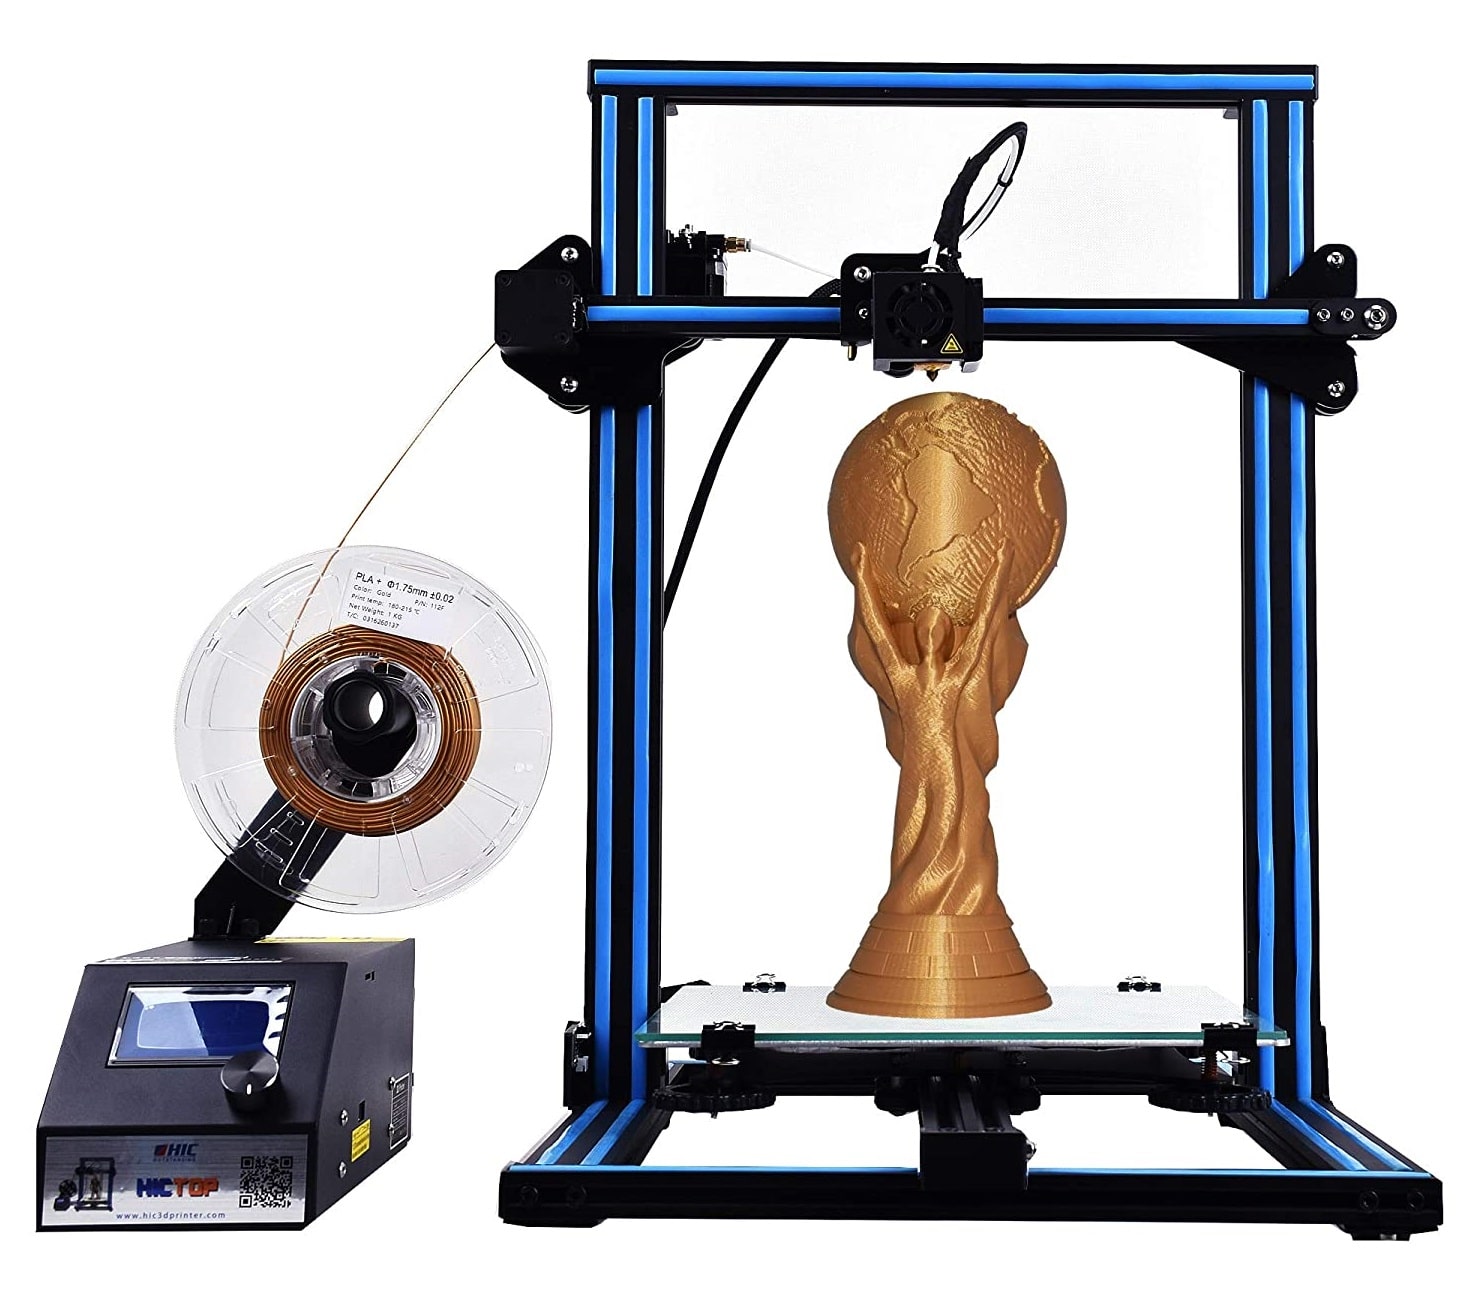 Creality CR-10S 3D Printer